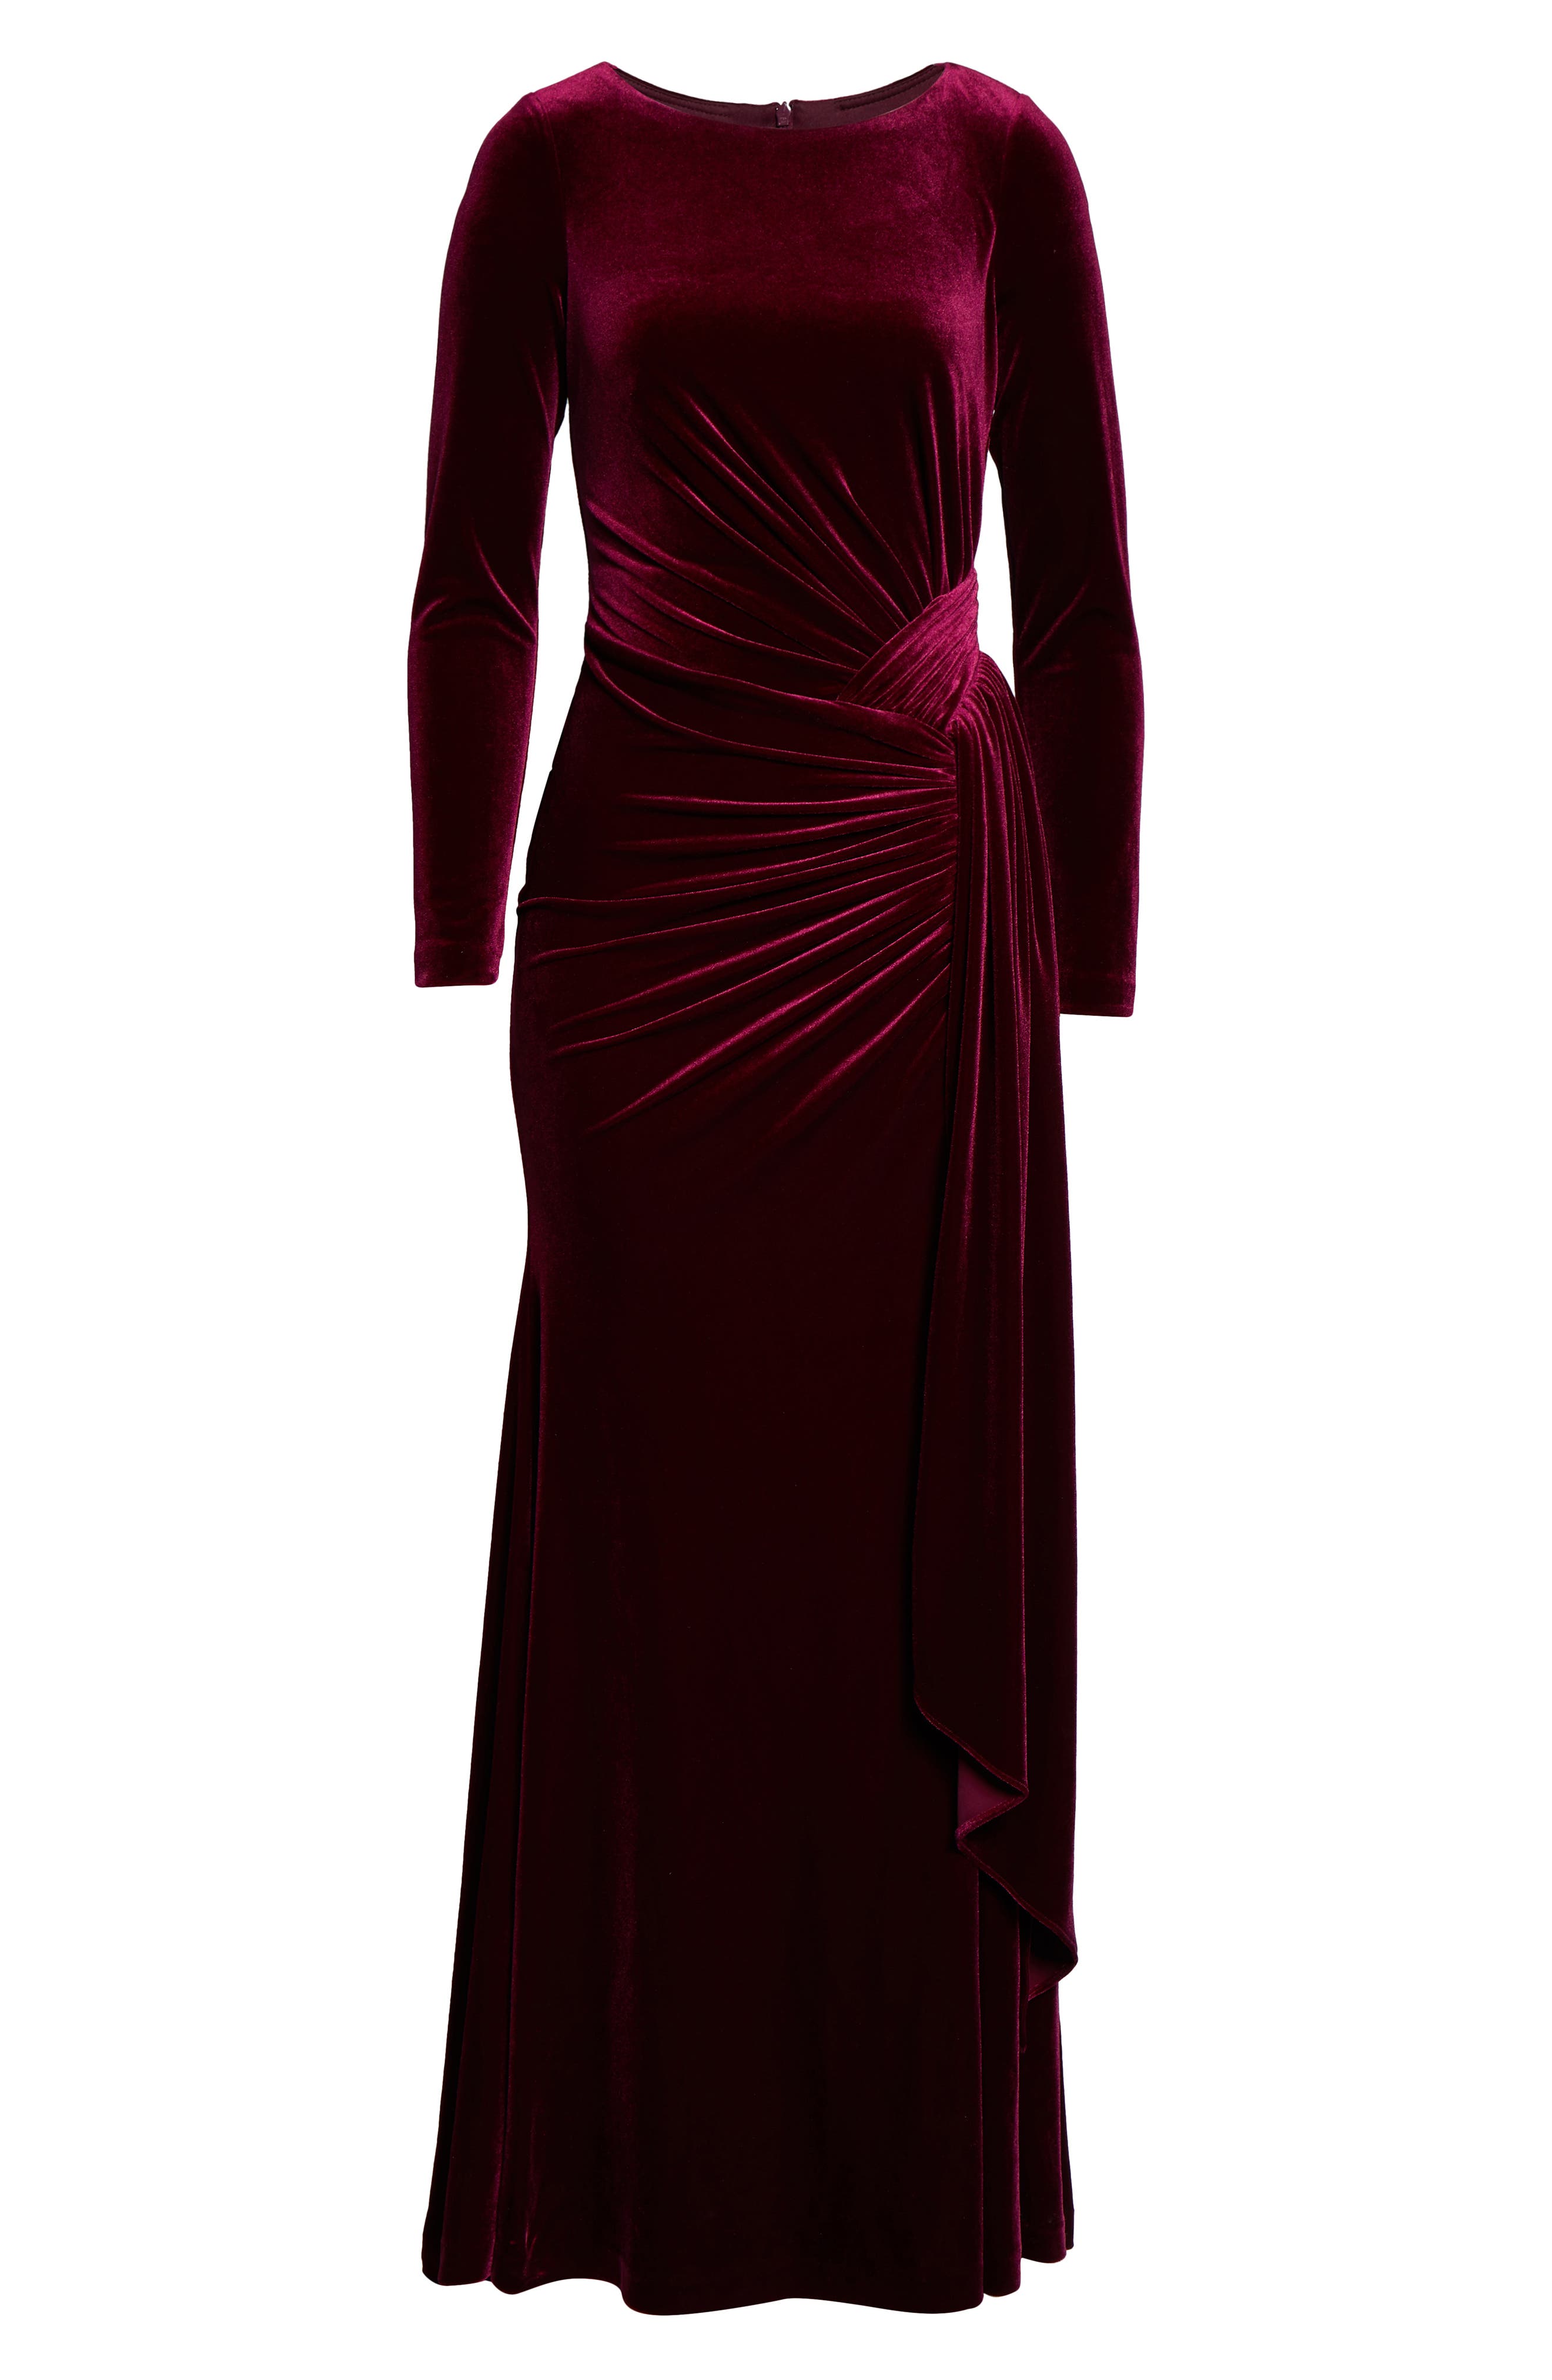 vince camuto burgundy velvet dress